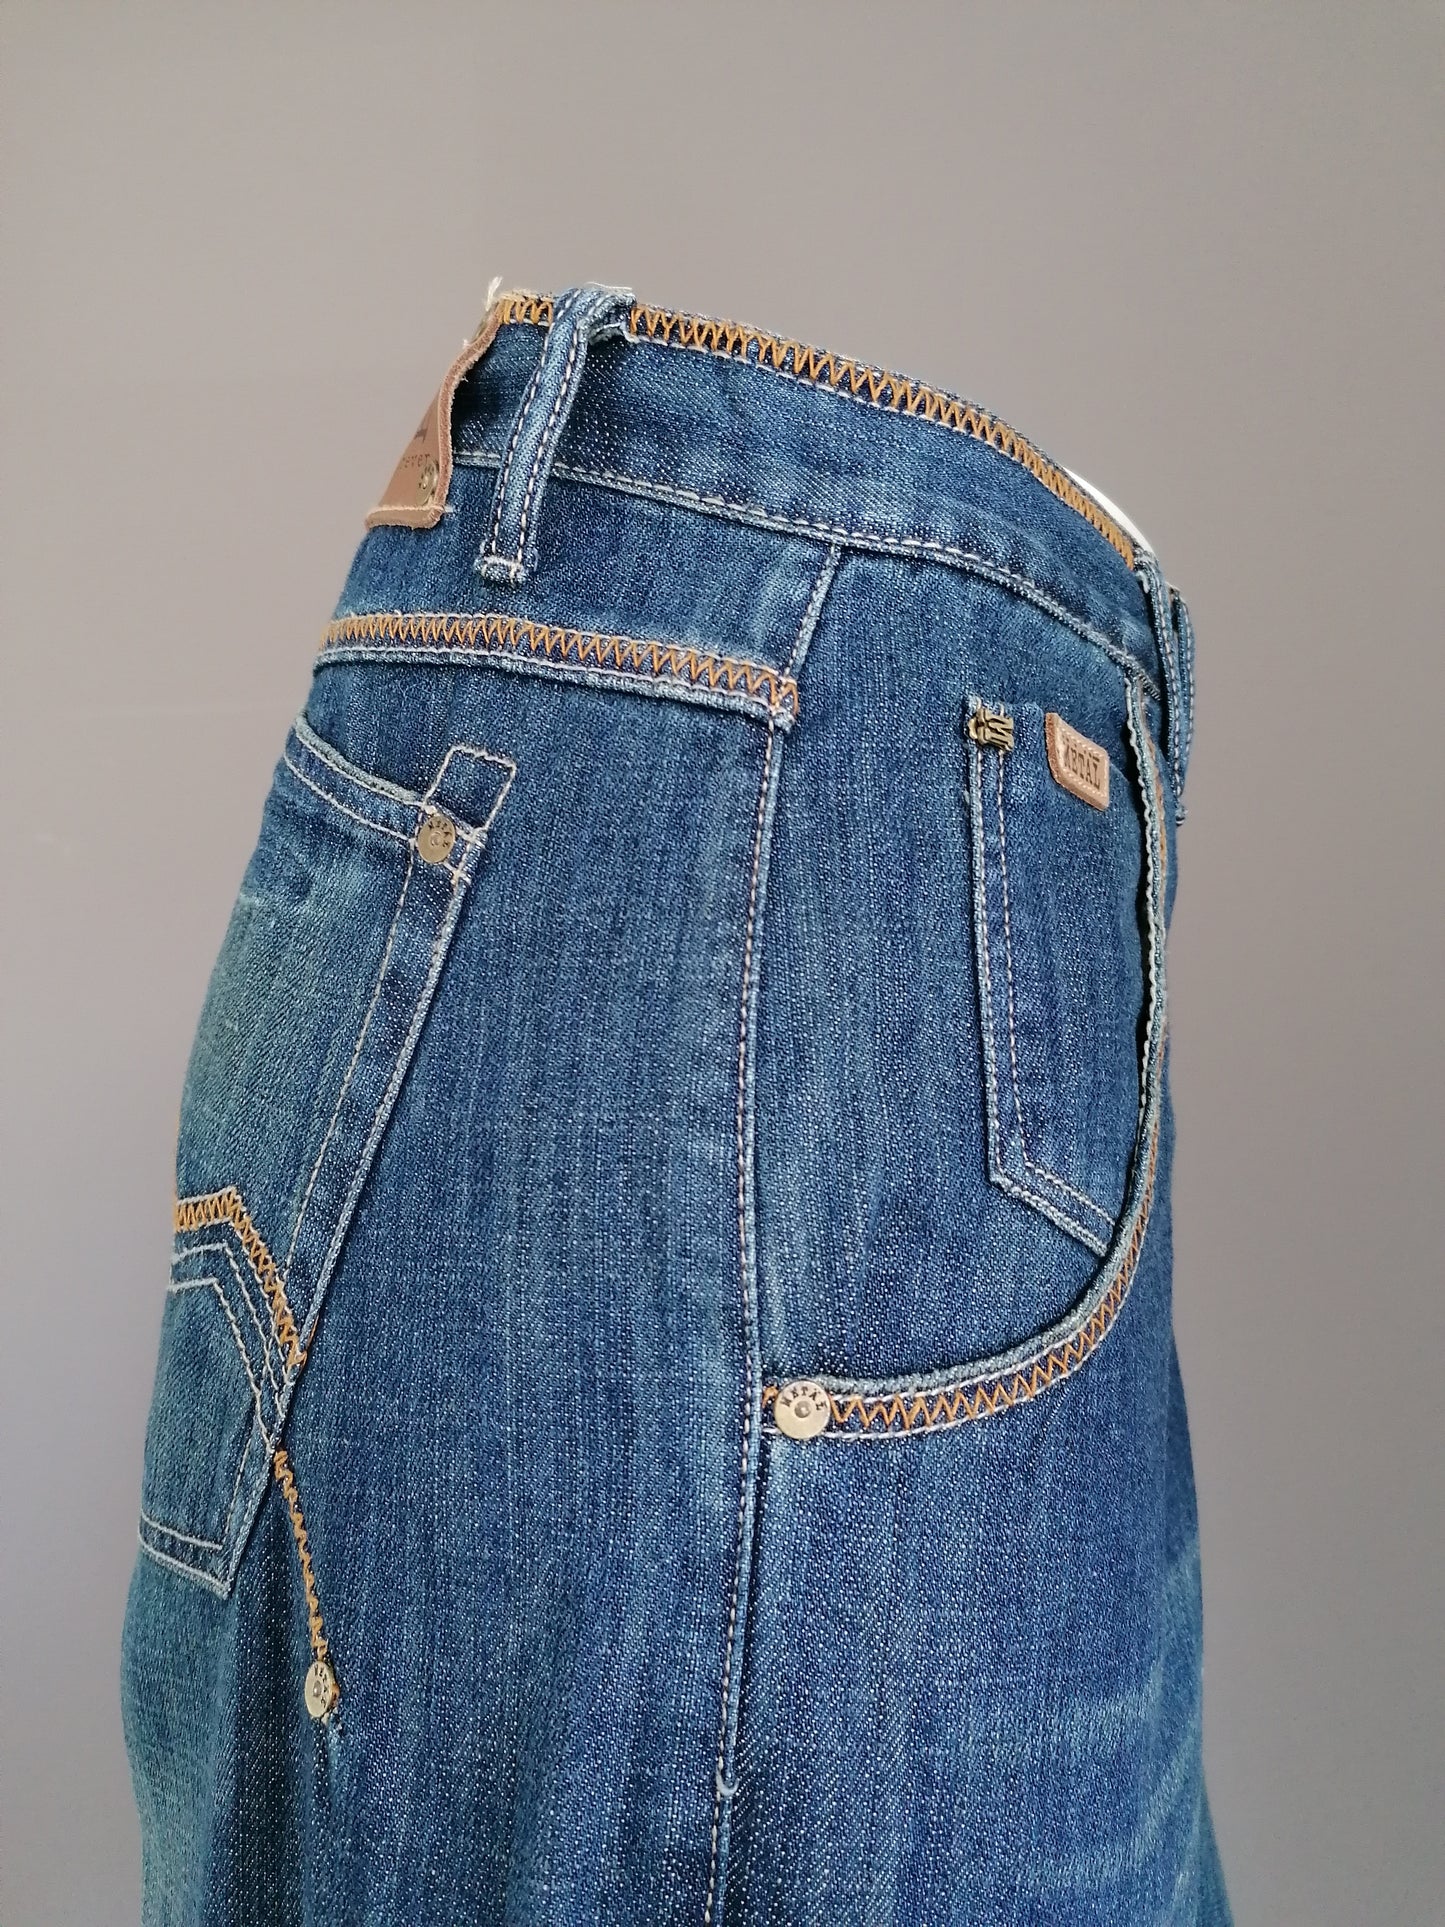 Jeans de metal duro. Azul con costuras marrones. Tamaño W38 - L34. Piernas anchas.